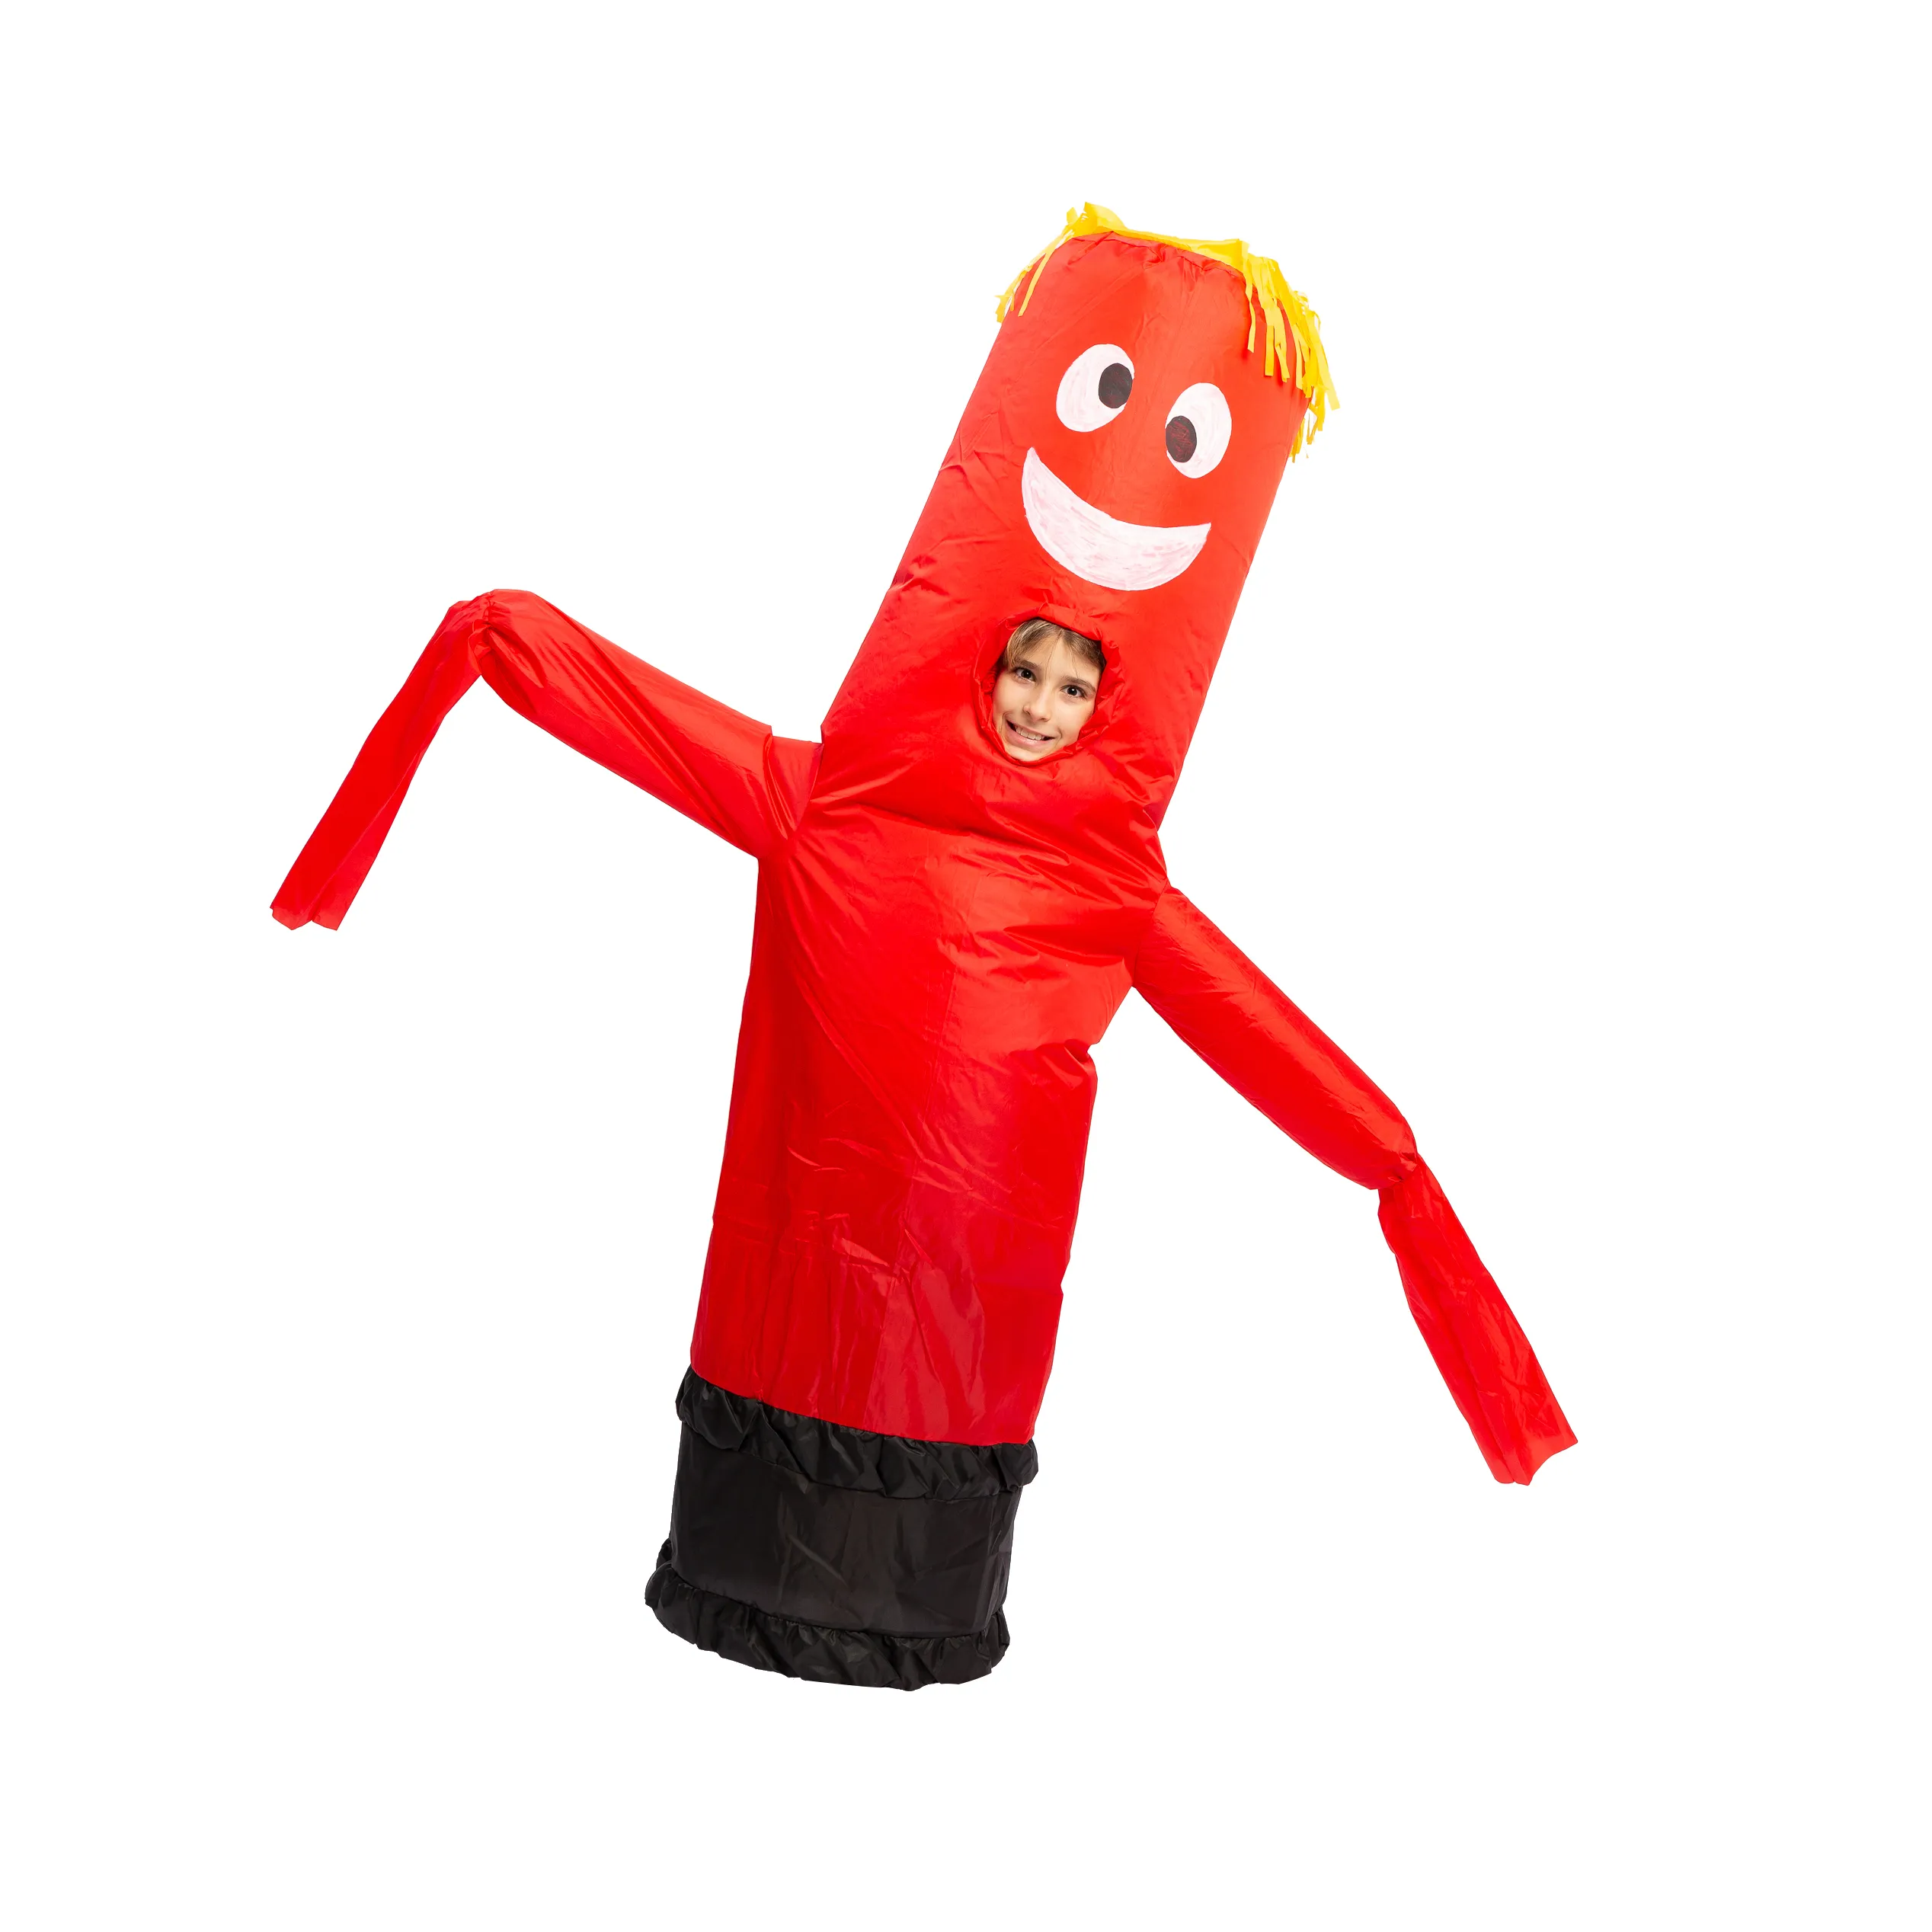 Kid inflatable tube man costume